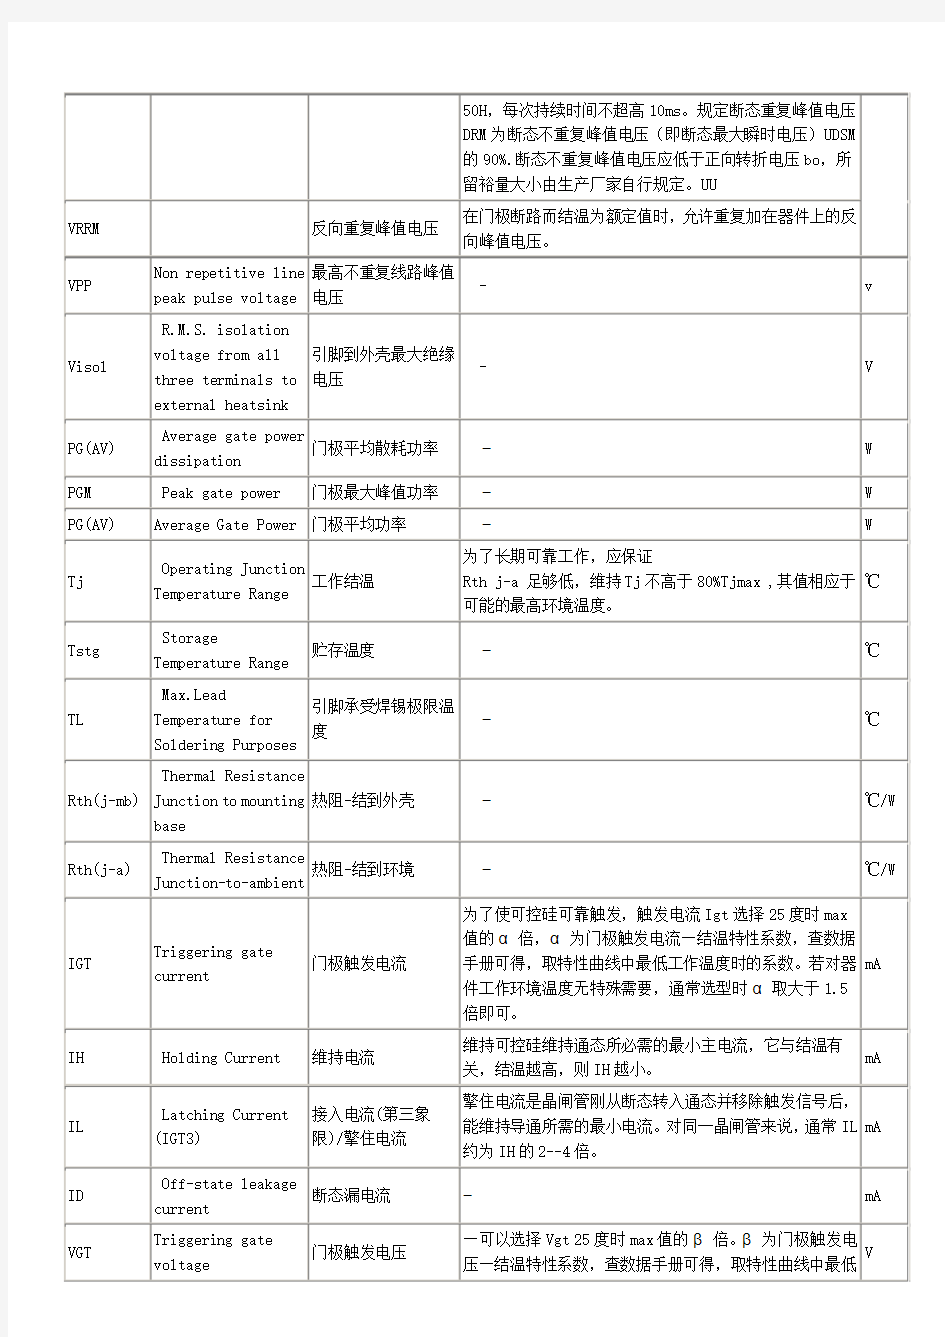 可控硅参数说明及中文英文对照表